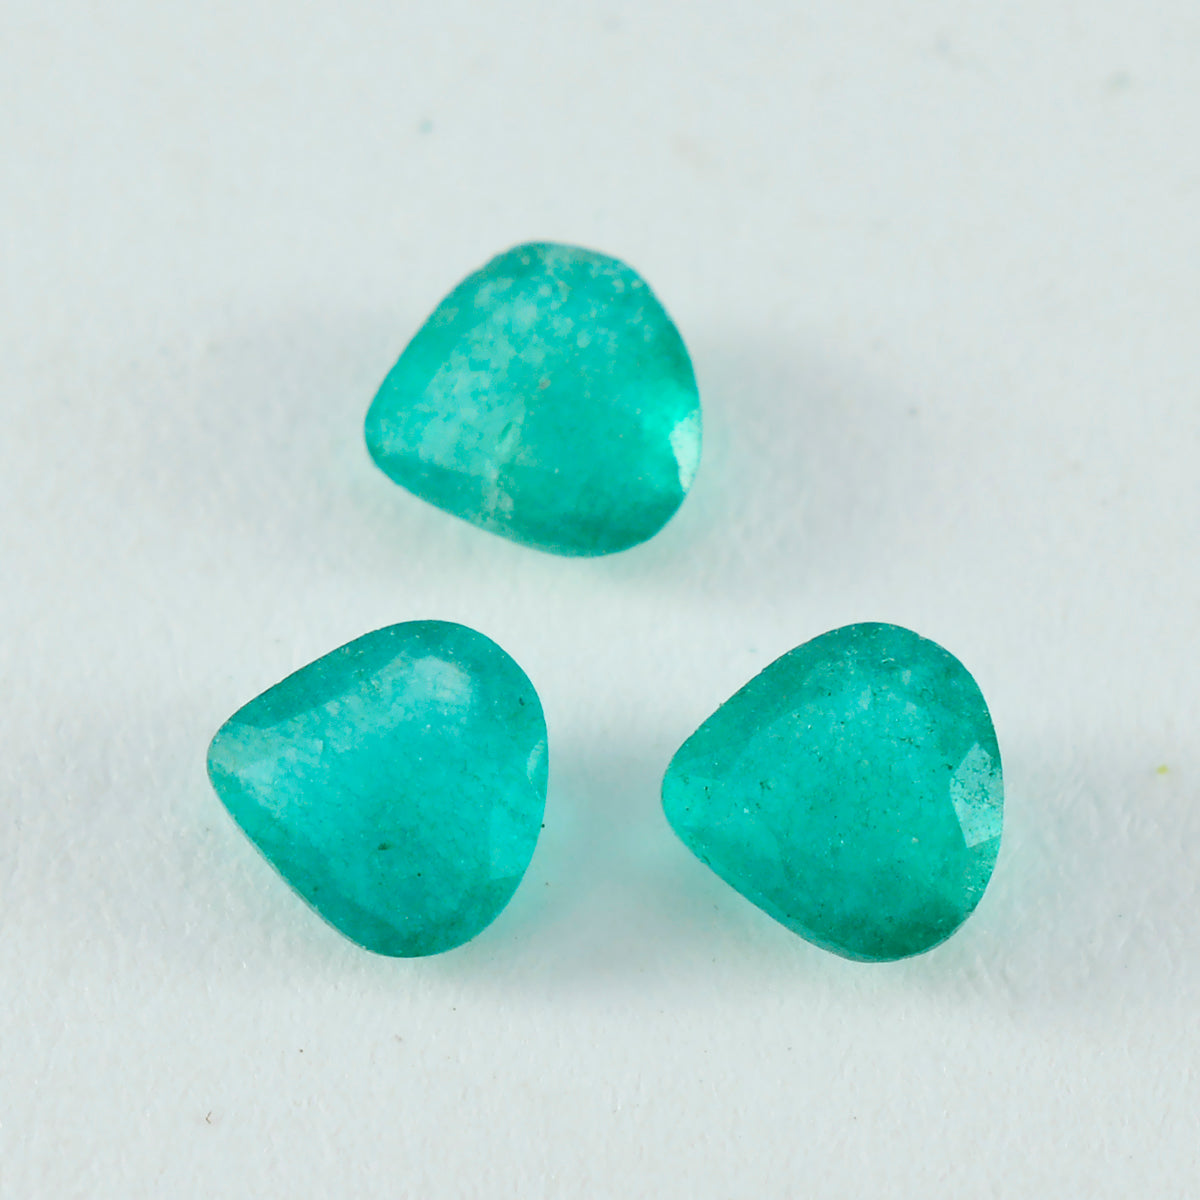 riyogems, 1 шт., настоящая зеленая яшма, граненая, 10x10 мм, в форме сердца, качество AAA, свободный драгоценный камень